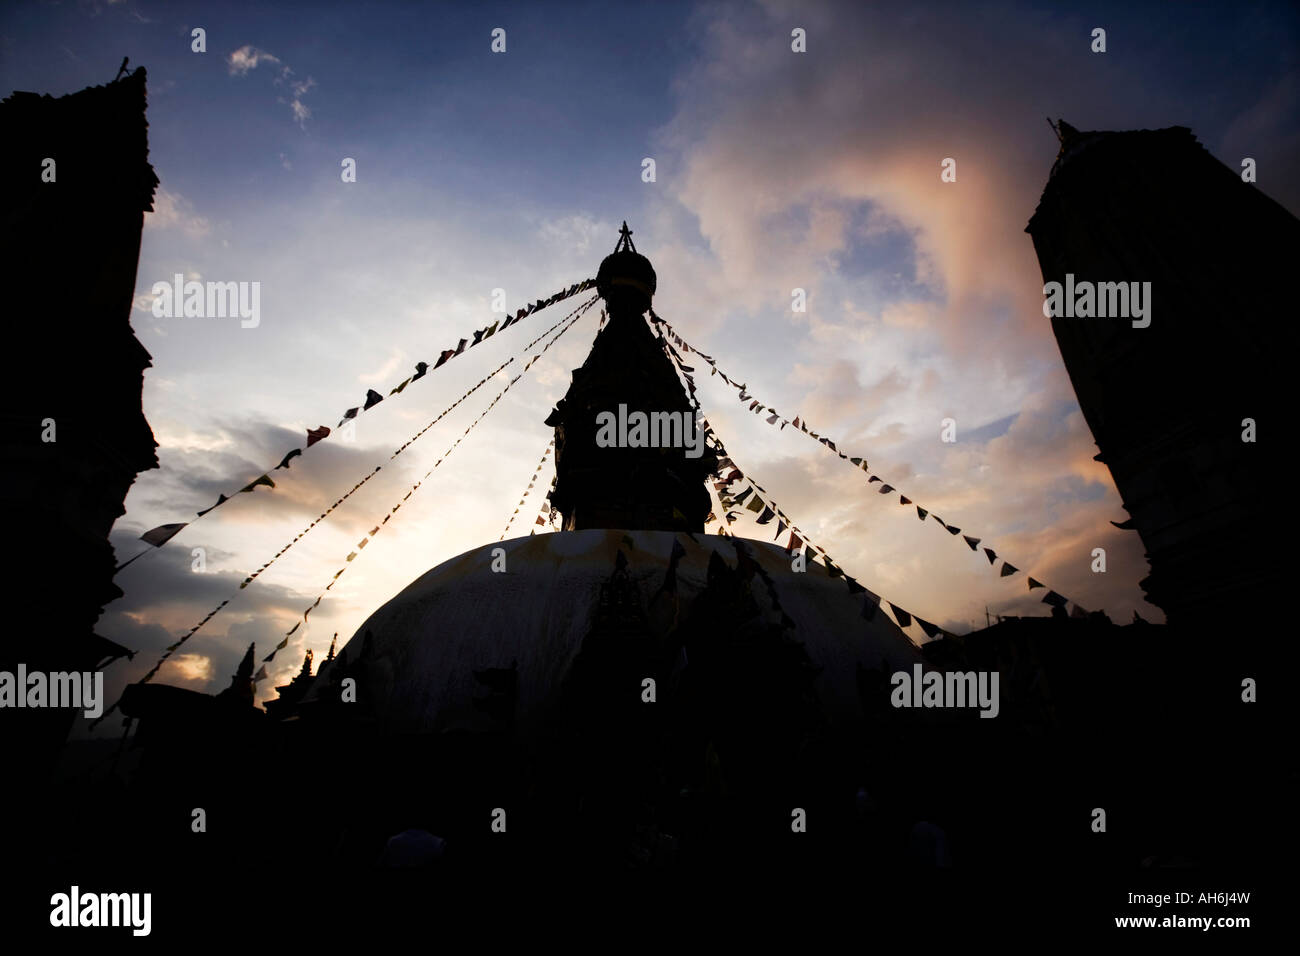 Silhouette of Swayambhunath stupa. Kathmandu, Nepal Stock Photo